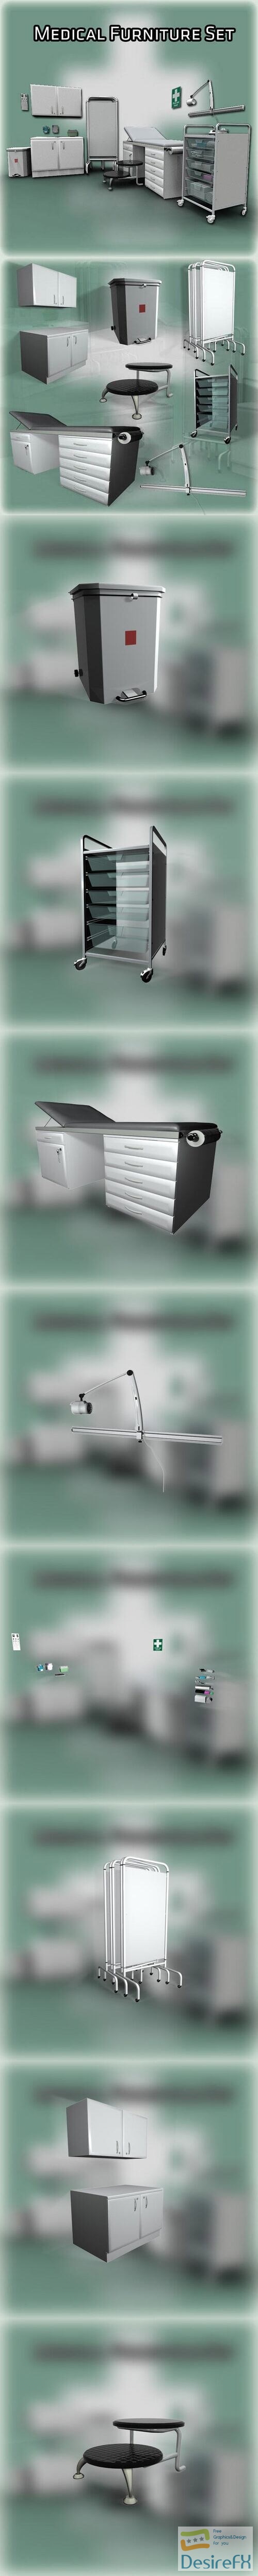 Medical Furniture Set 3D Model